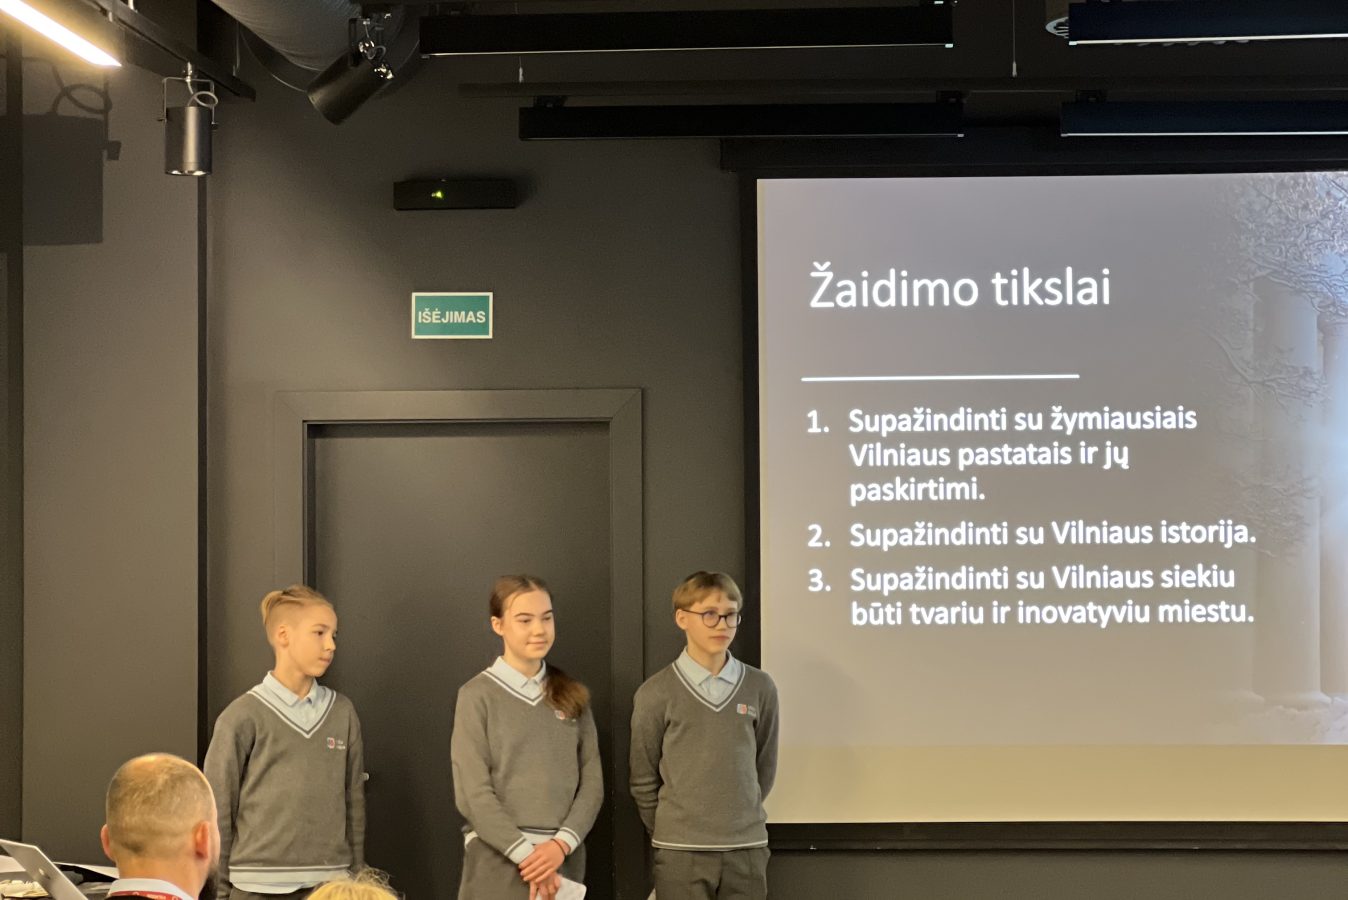 Mokiniai žaidimus kūrė ne tik apie Vilniaus miesto pažinimą įvairiais laikotarpiais, bet savo žaidimuose pabrėžė ir tvarumo bei inovatyvumo aspektus.